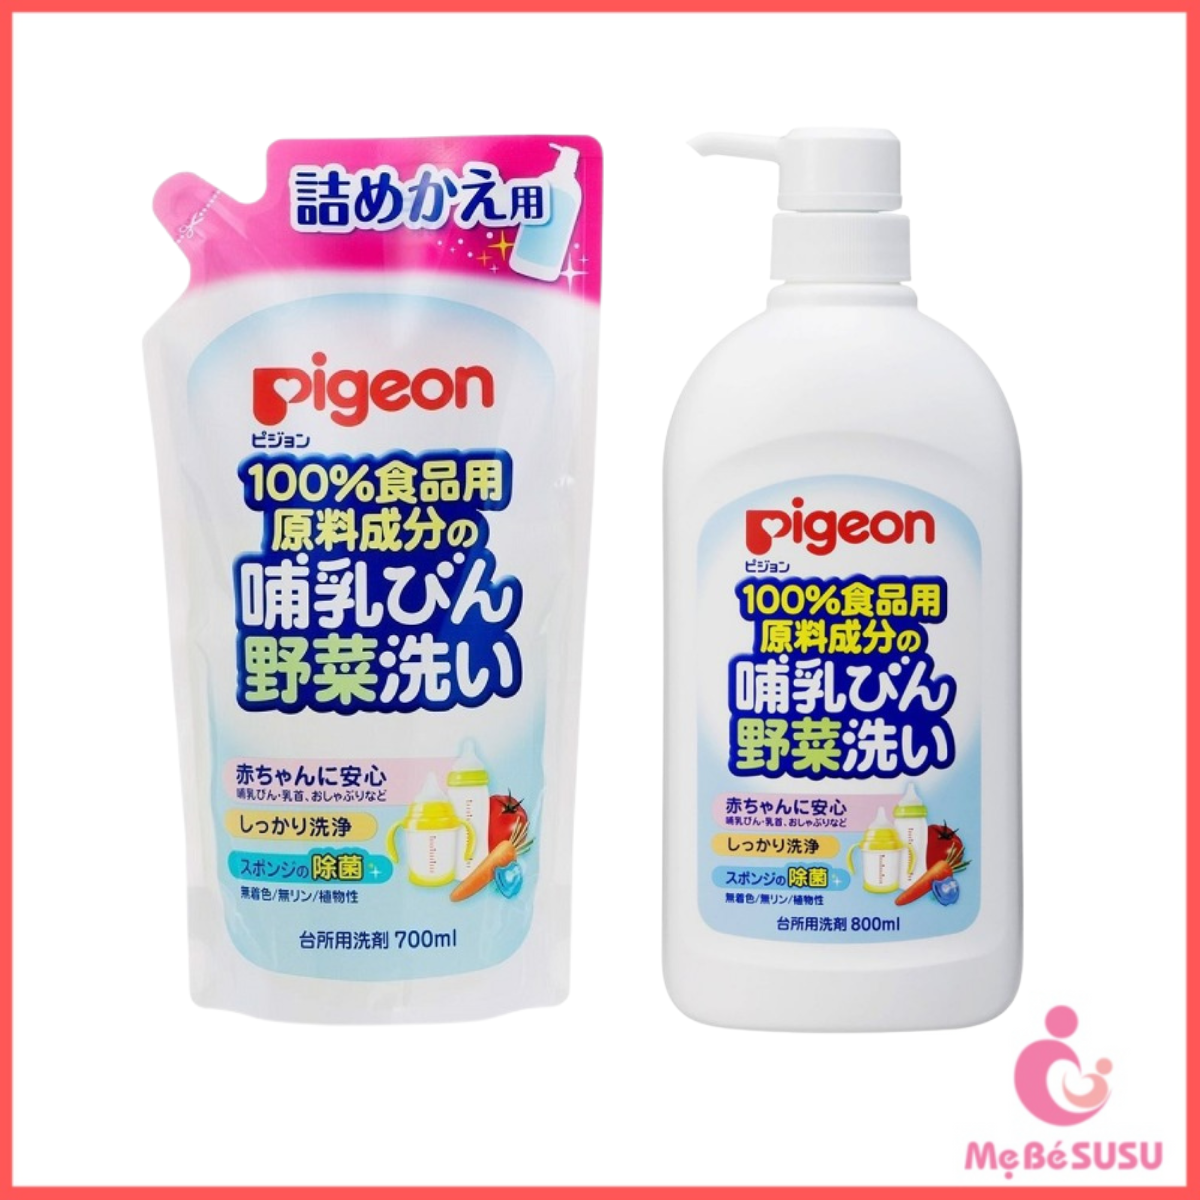 Nước Rửa Bình Sữa Cho Bé Pigeon Nhật Bản - Hàng Nội Địa Nhật